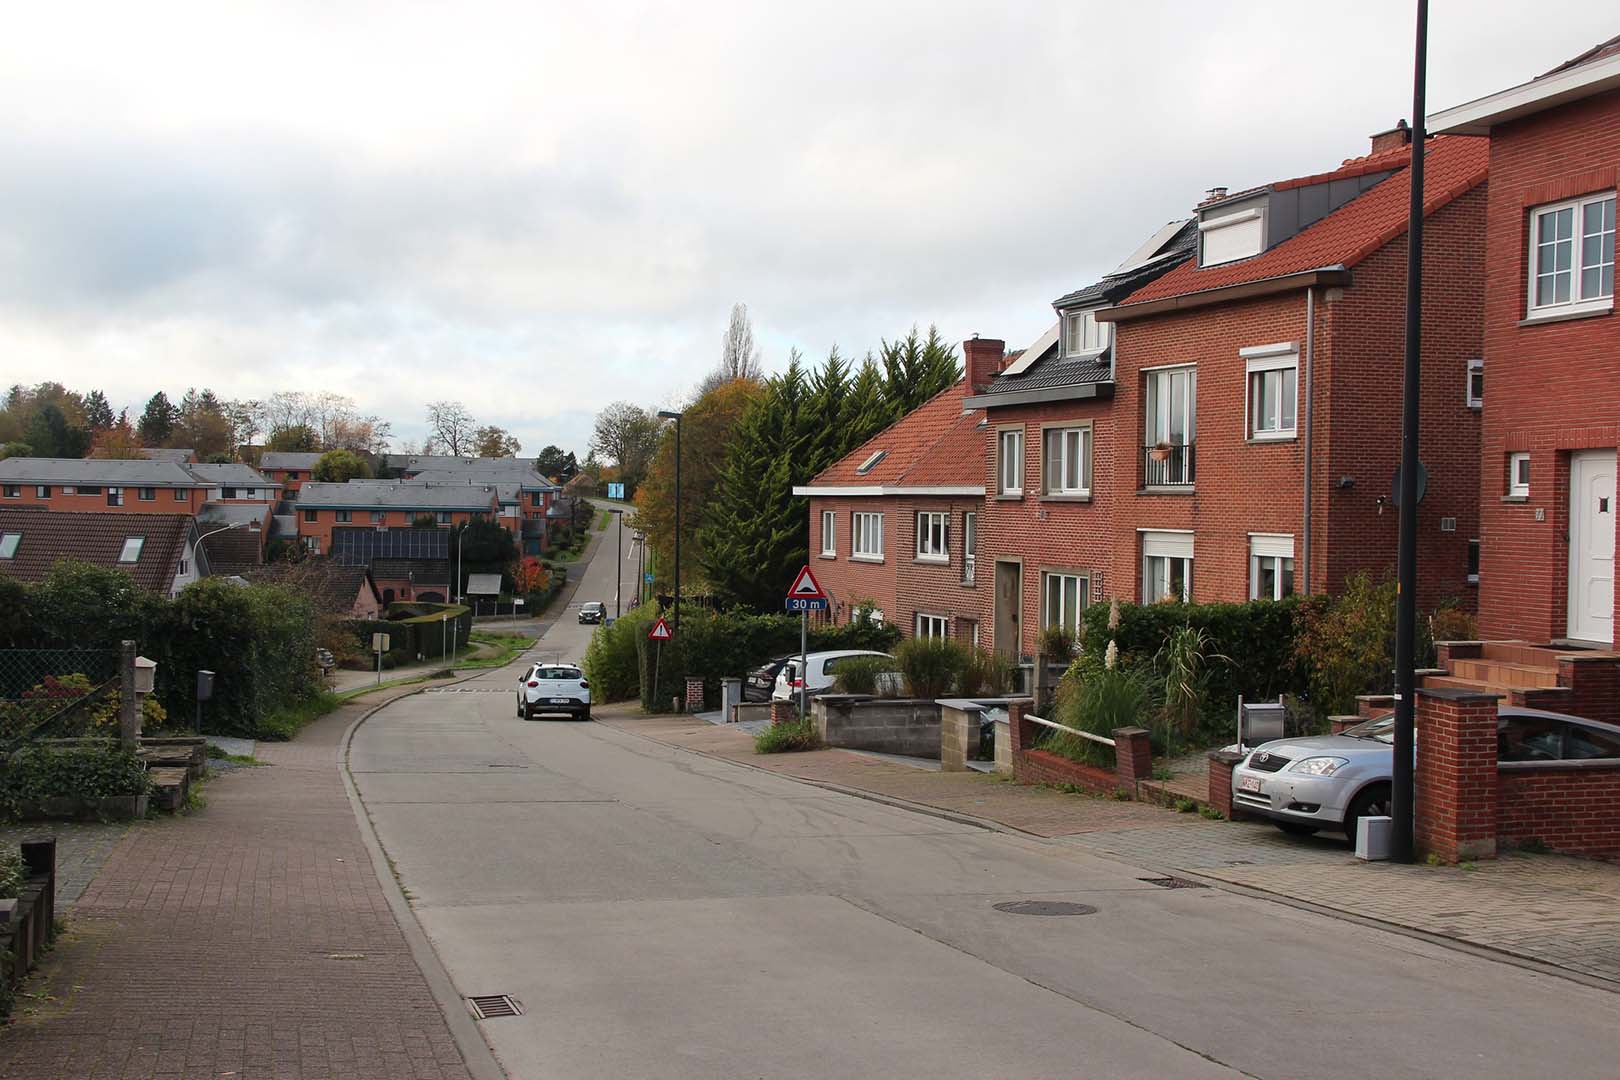 Rue d'un quartier résidentiel, le Bierenberg, qui mène au campus abandonné